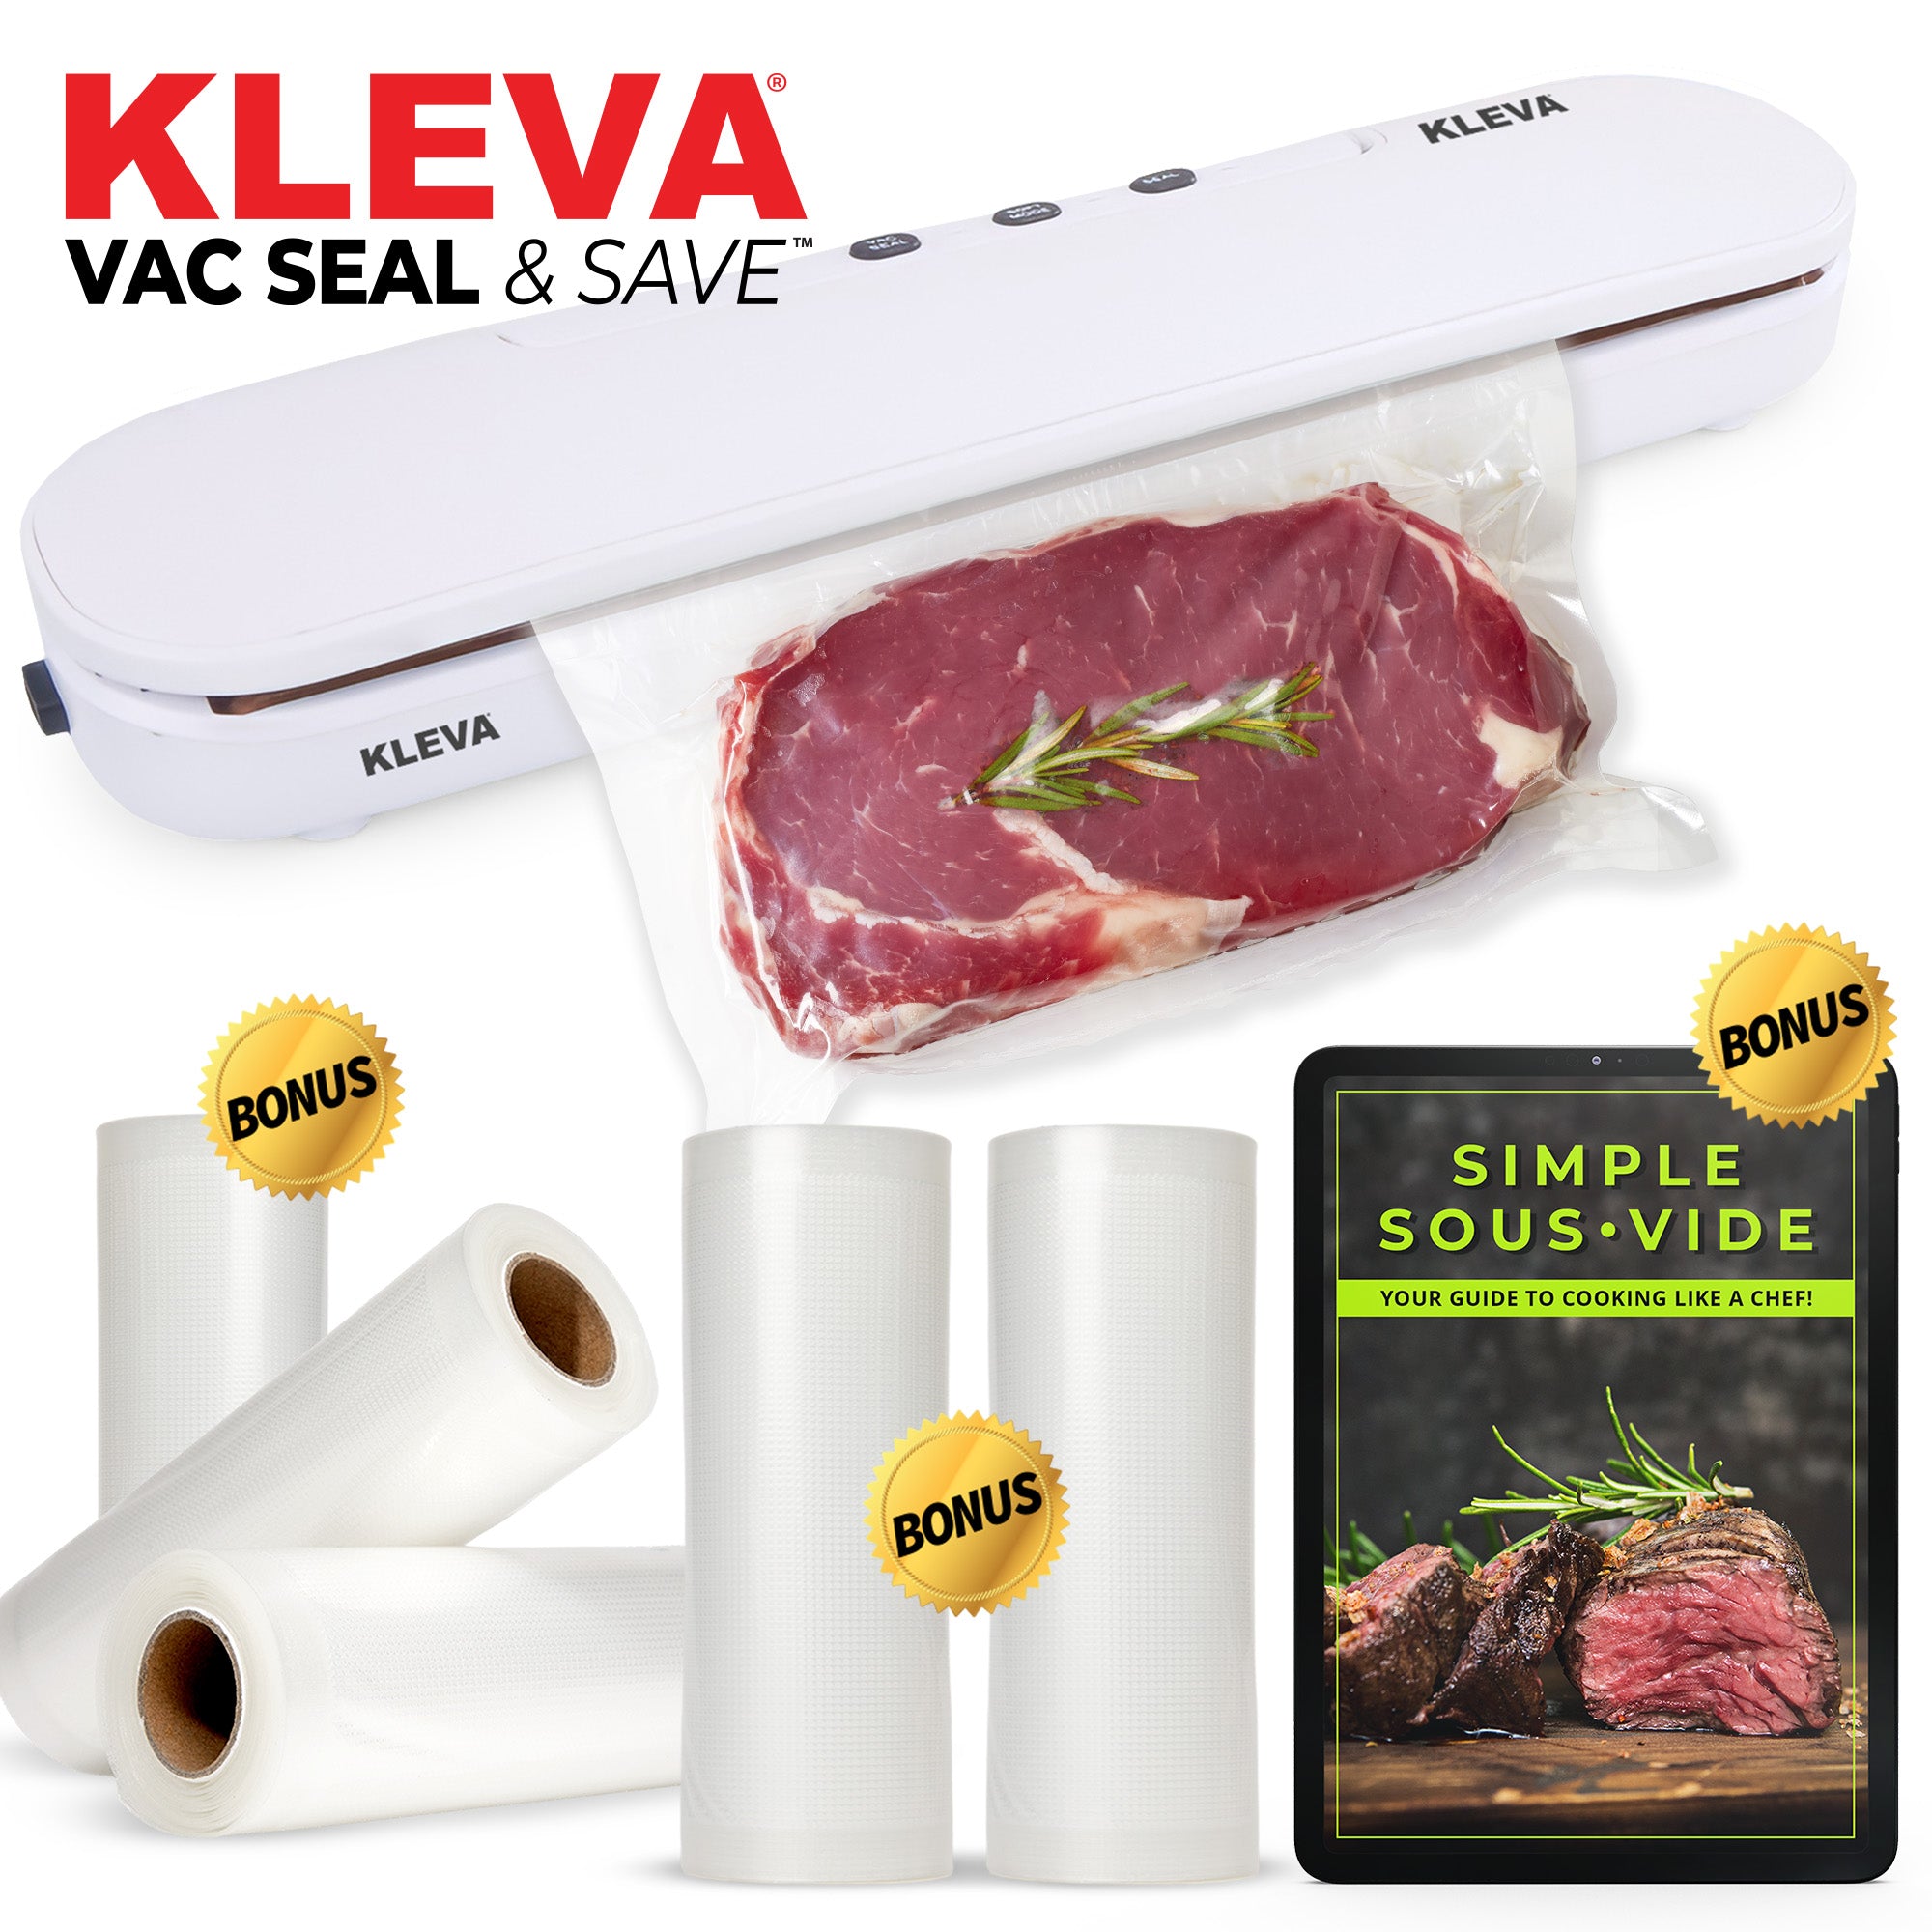 Buy FoodSaver Everyday Food Vacuum Sealer White